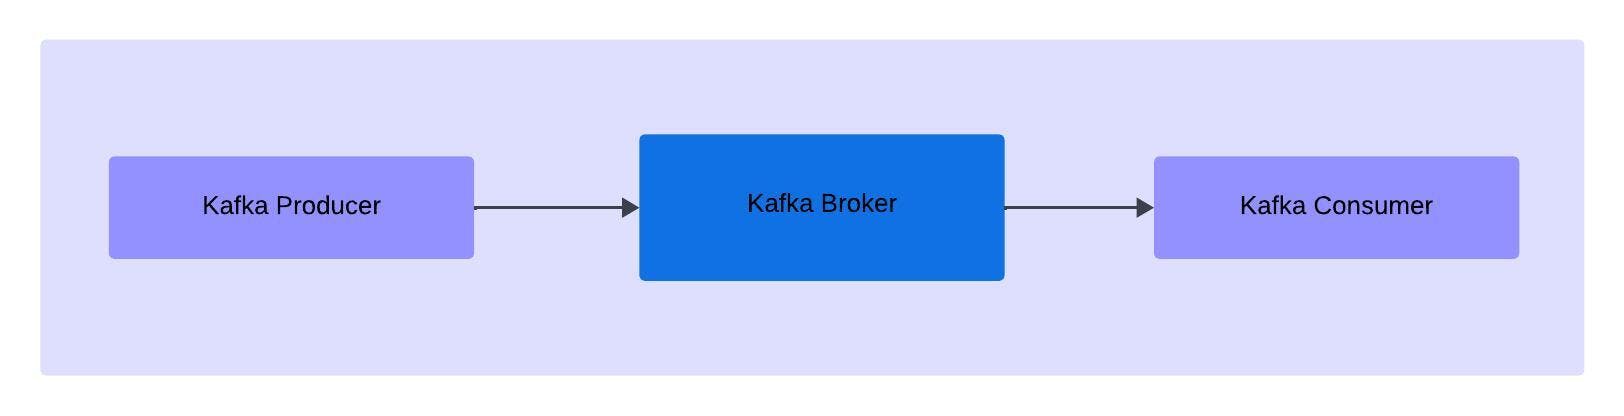 Kafka Broker